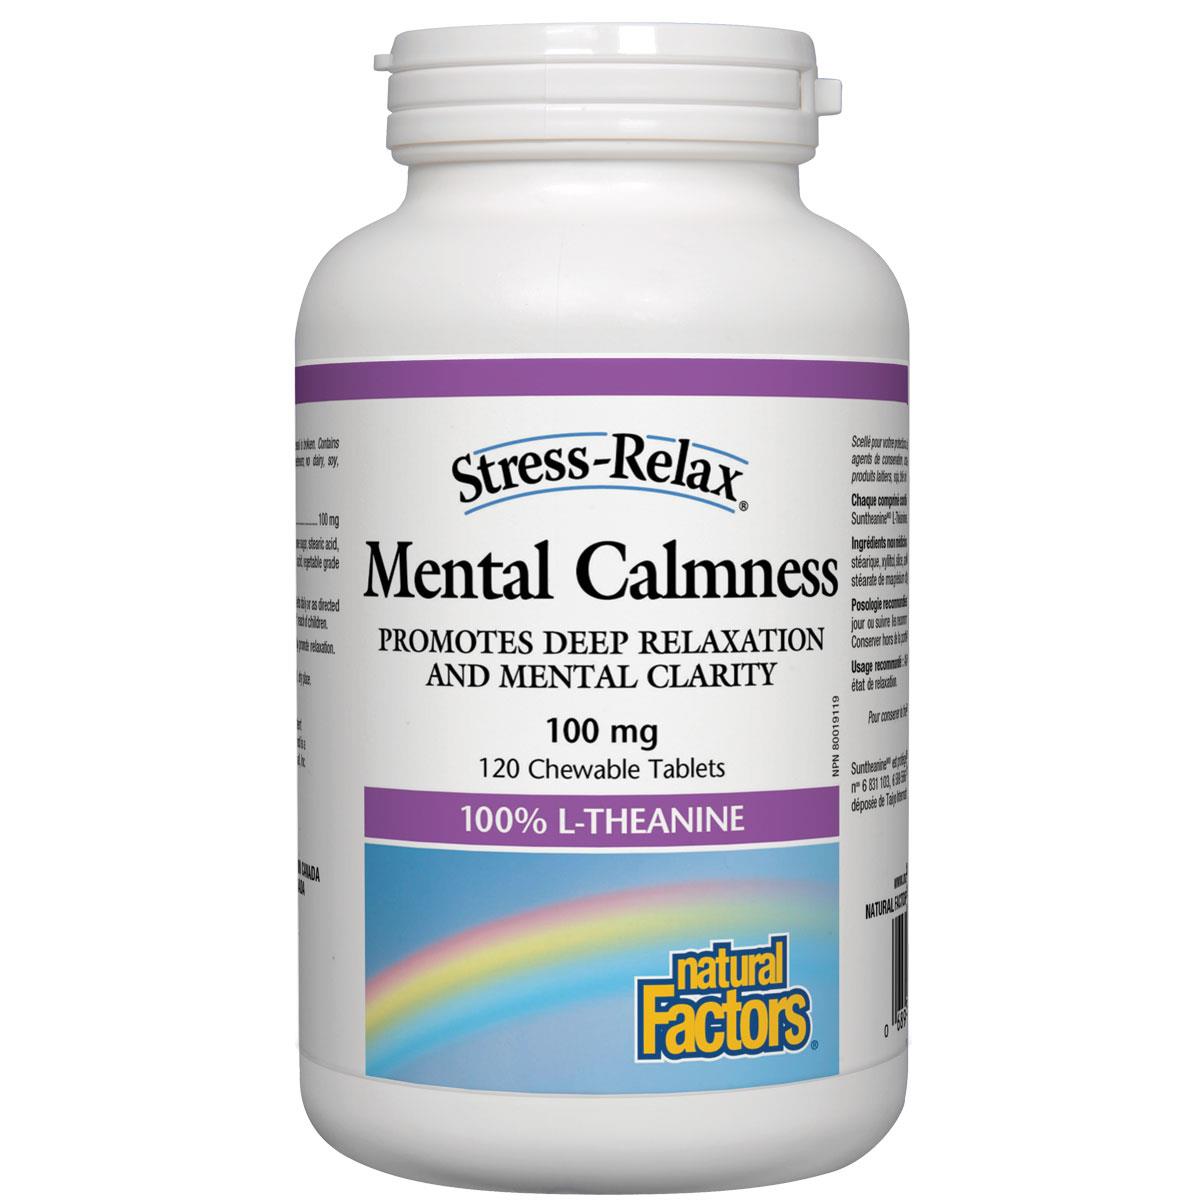 Natural Factors Mental Calmness, 100mg, 120 Chewable Tablets